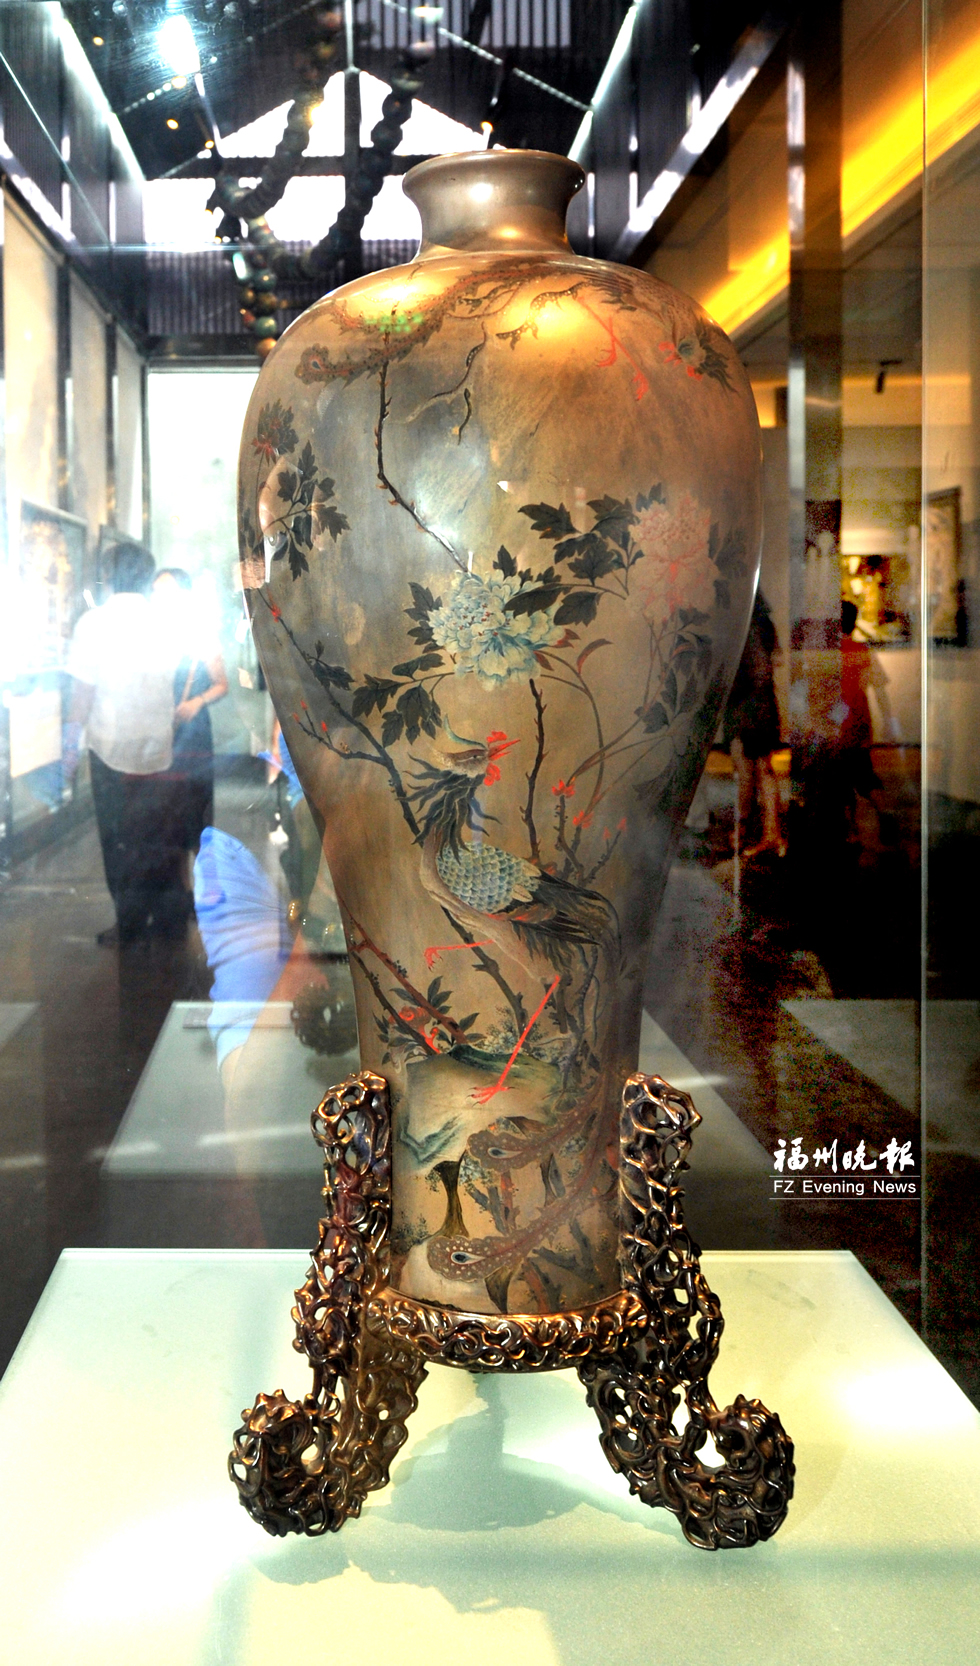 福州国际漆艺双年展开幕 625件漆艺精品亮相朱紫坊